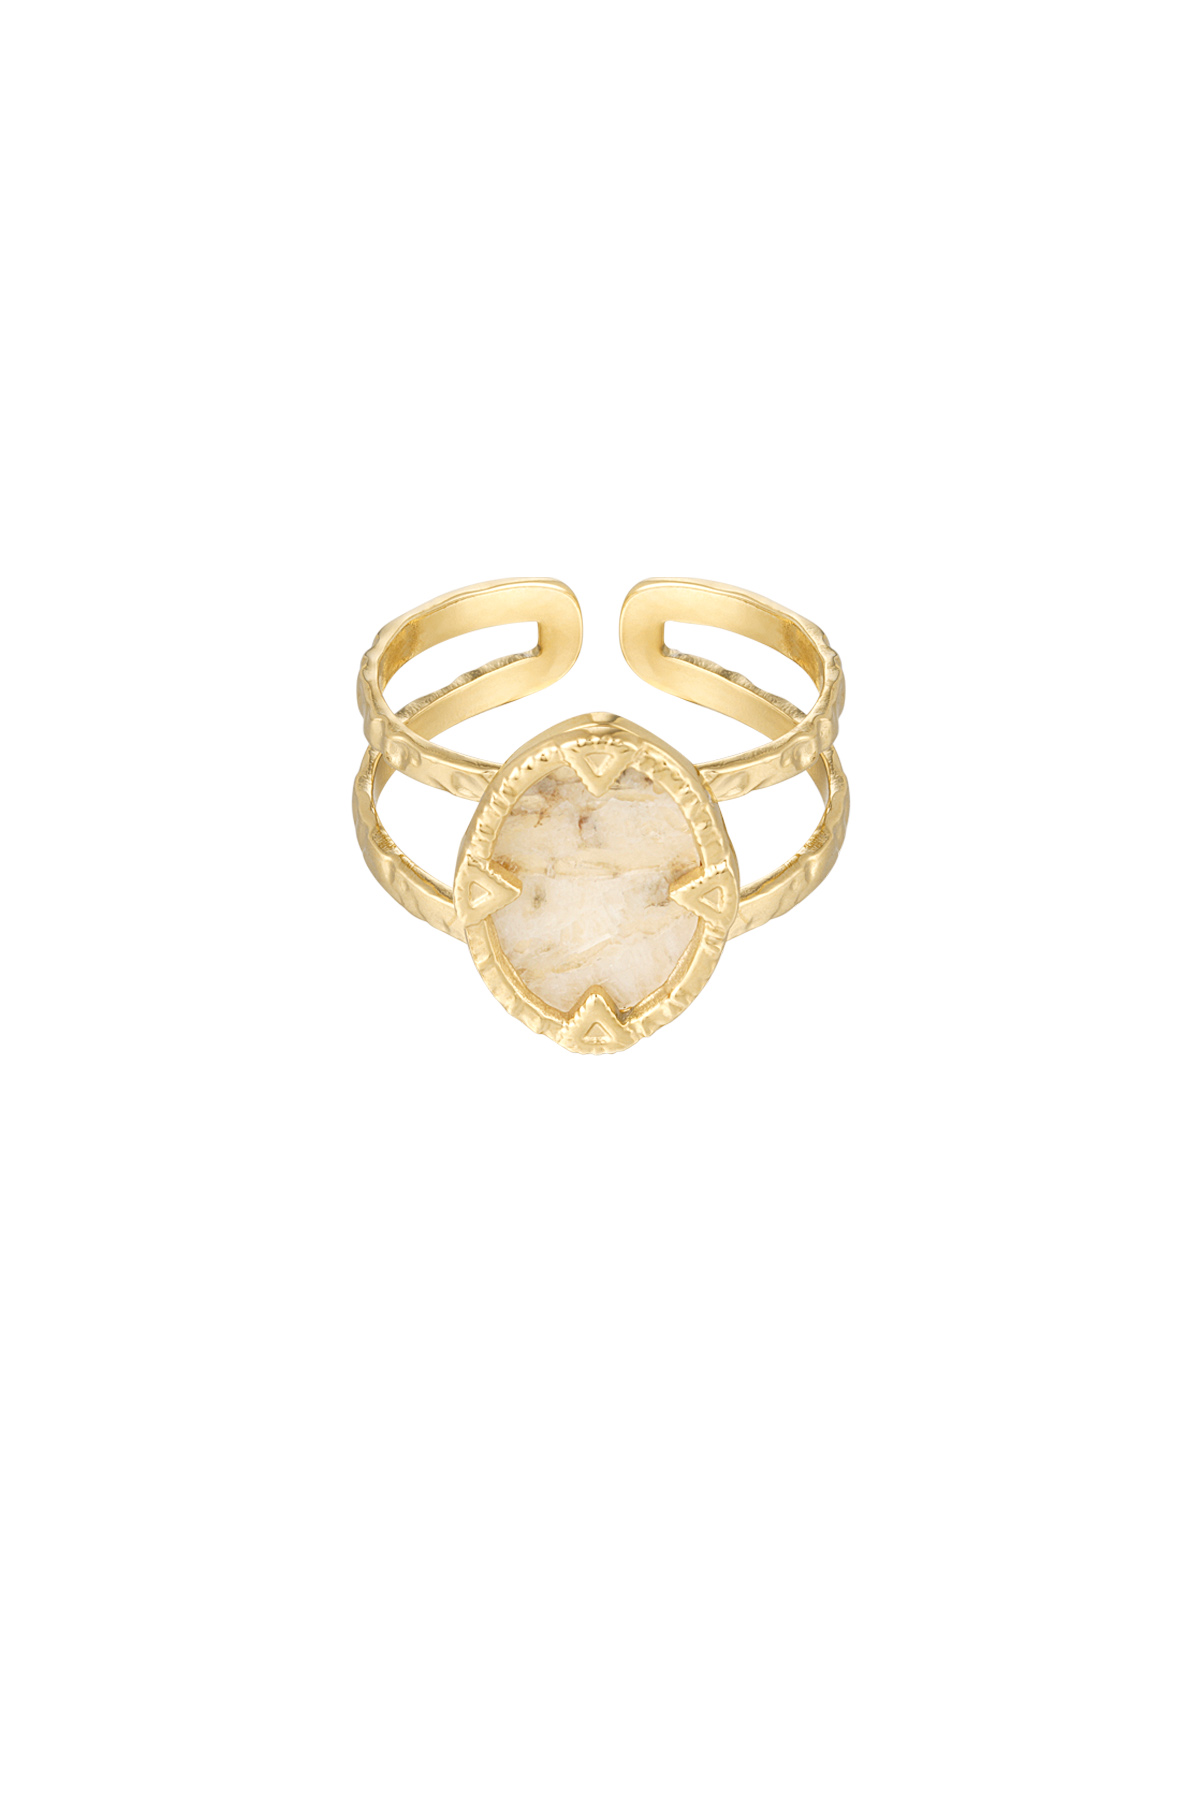 Ring met steen - goud/beige